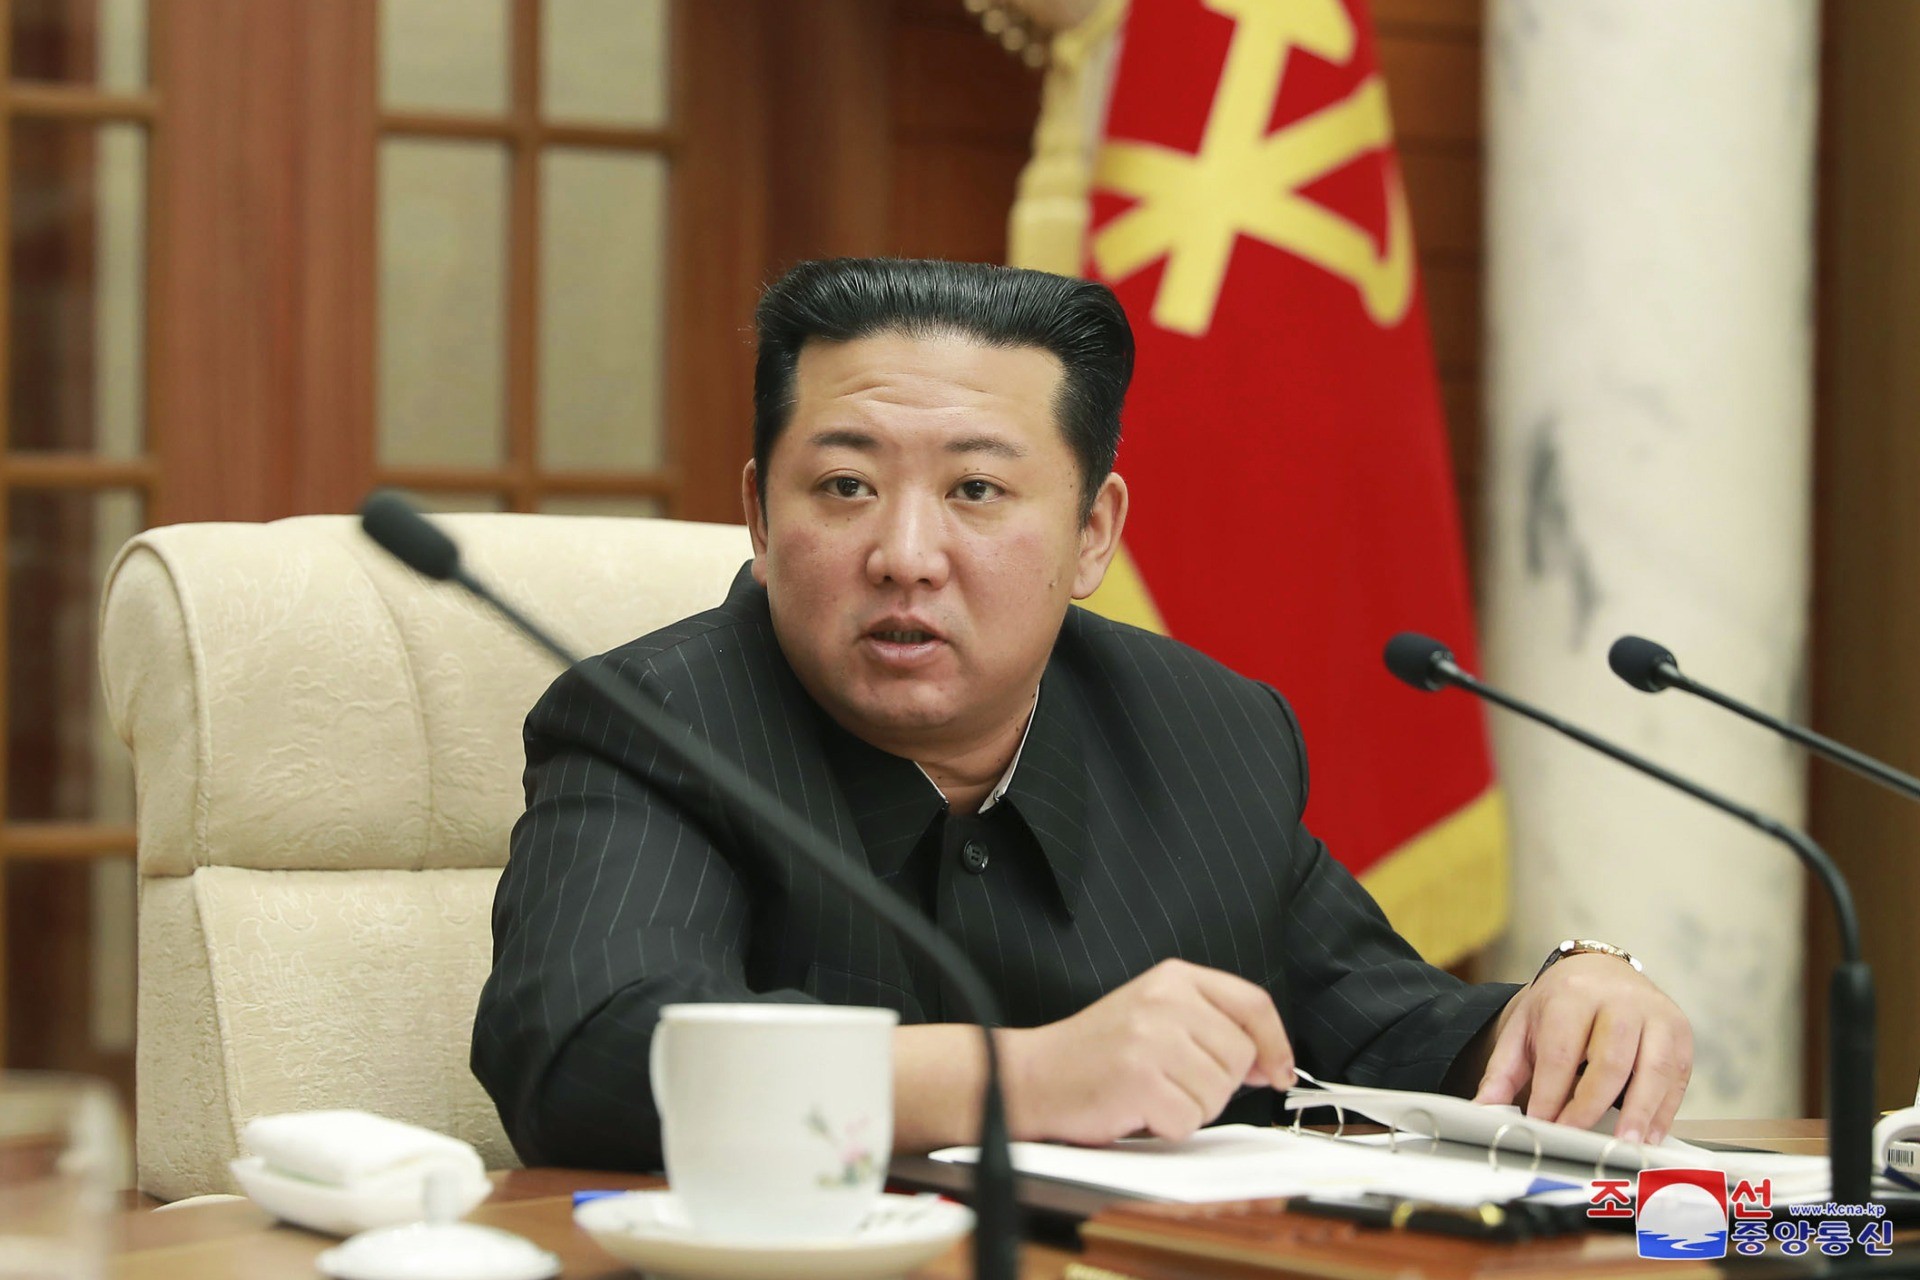 Kim Jong-un’s sister threatens to destroy South Korea